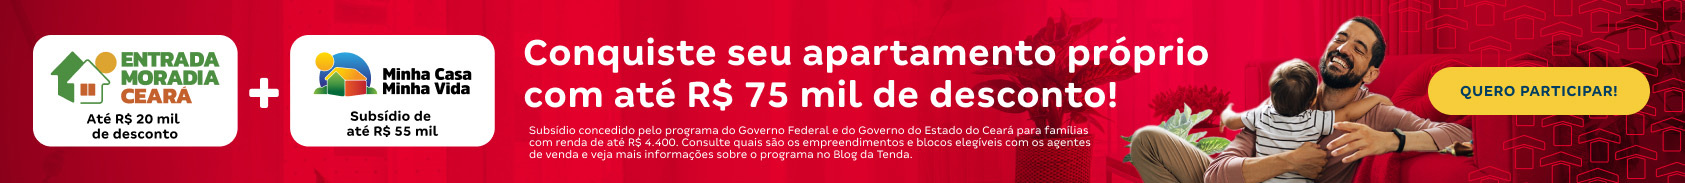 Banner Programa Entrada Moradia Ceará | Tenda.com